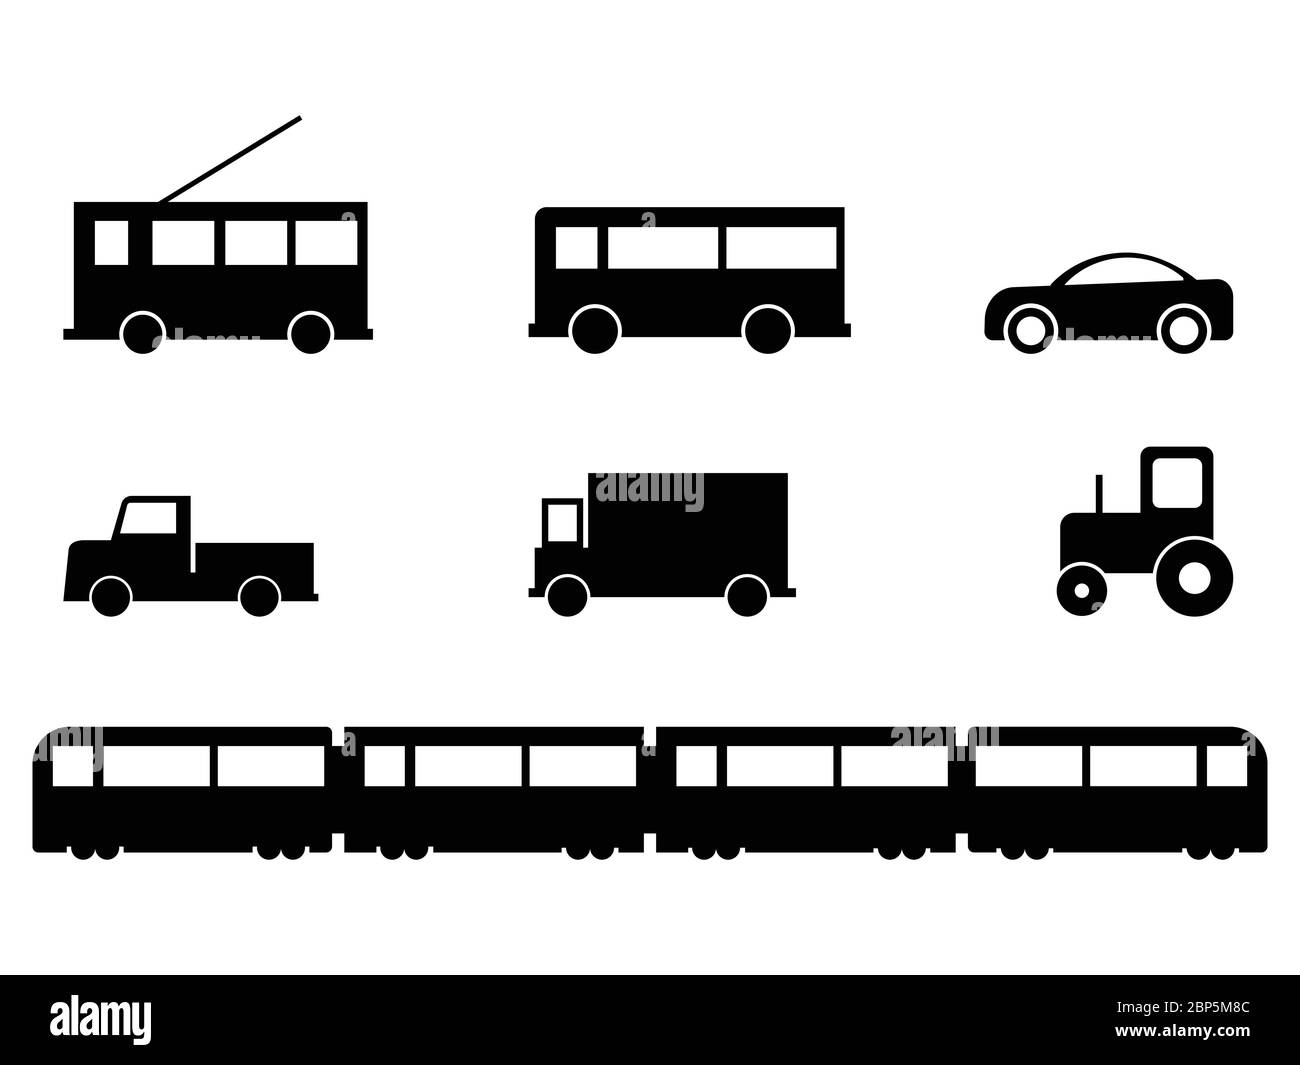 Ensemble de véhicules de transport terrestre. Un ensemble de véhicules au sol. Bus Trap car camion tracteur train. EPS vectoriel noir et blanc Illustration de Vecteur